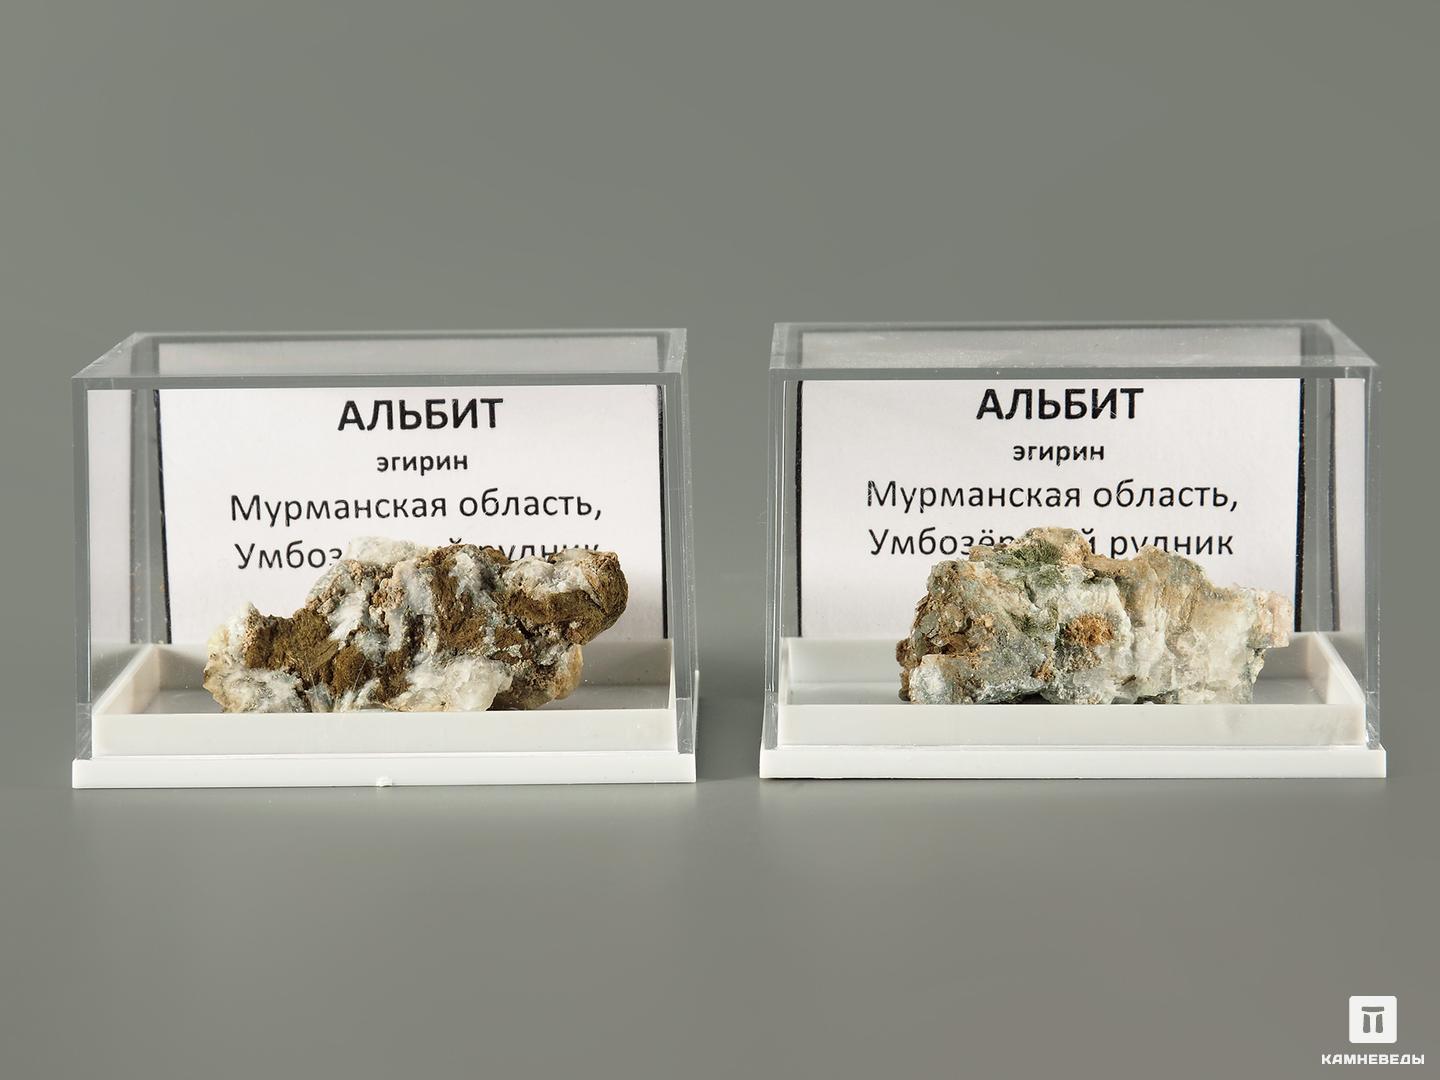 Альбит с эгирином в пластиковом боксе, 2,5-4 см, 7014, фото 2